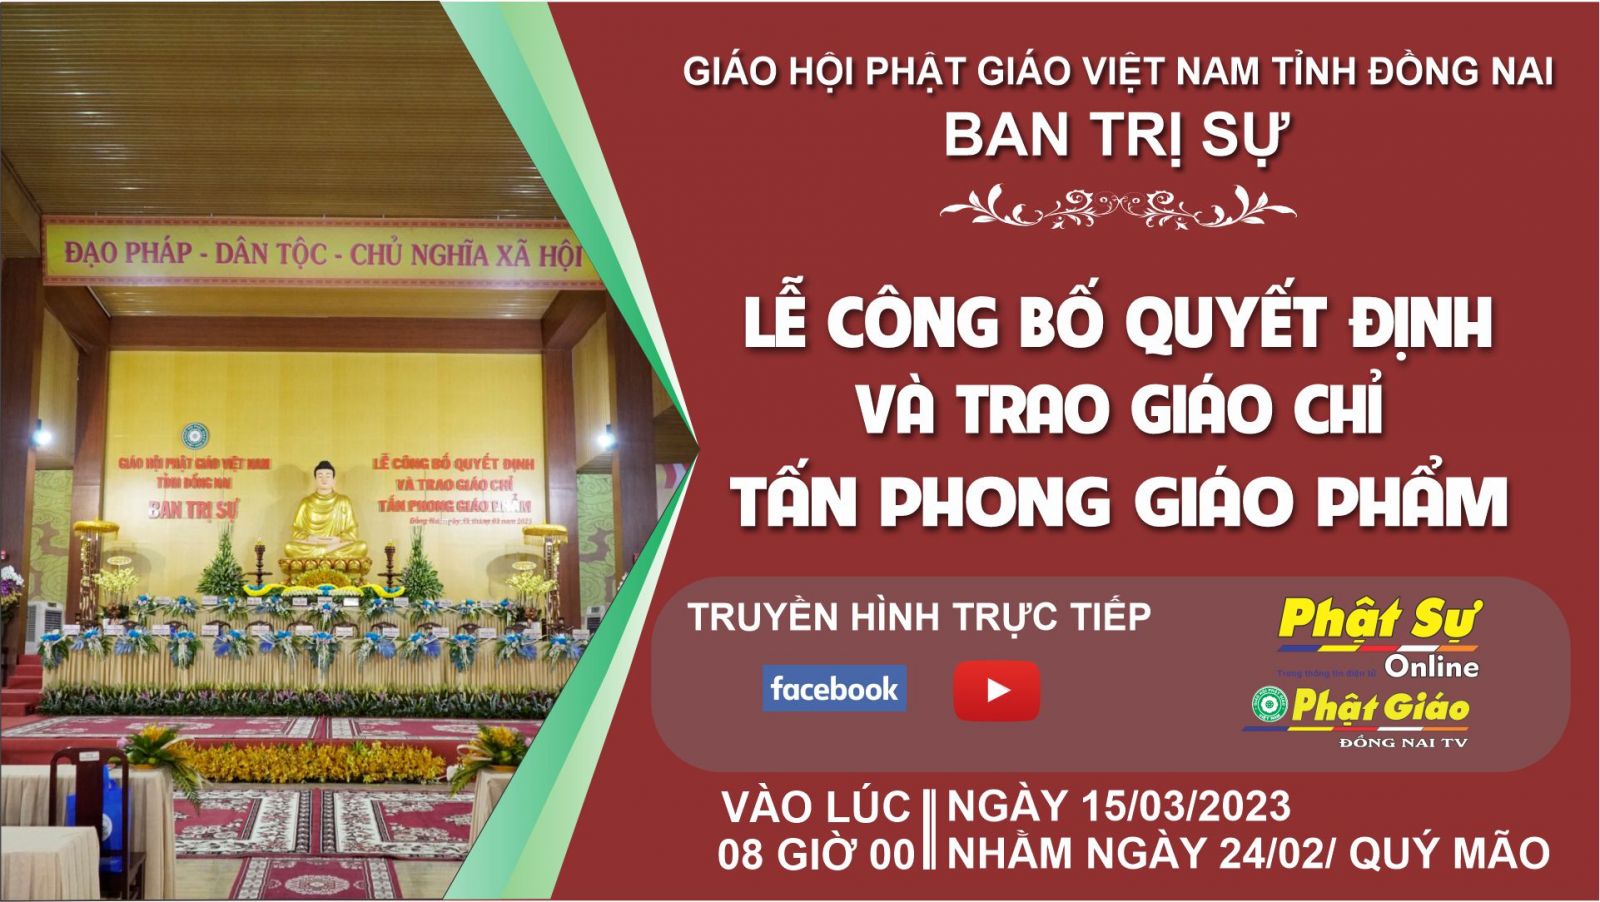 Trực tiếp: Ban Trị sự GHPGVN tỉnh Đồng Nai trang nghiêm tổ chức Lễ Công Bố Quyết Định Và Trao Giáo Chỉ Tấn Phong Giáo Phẩm.